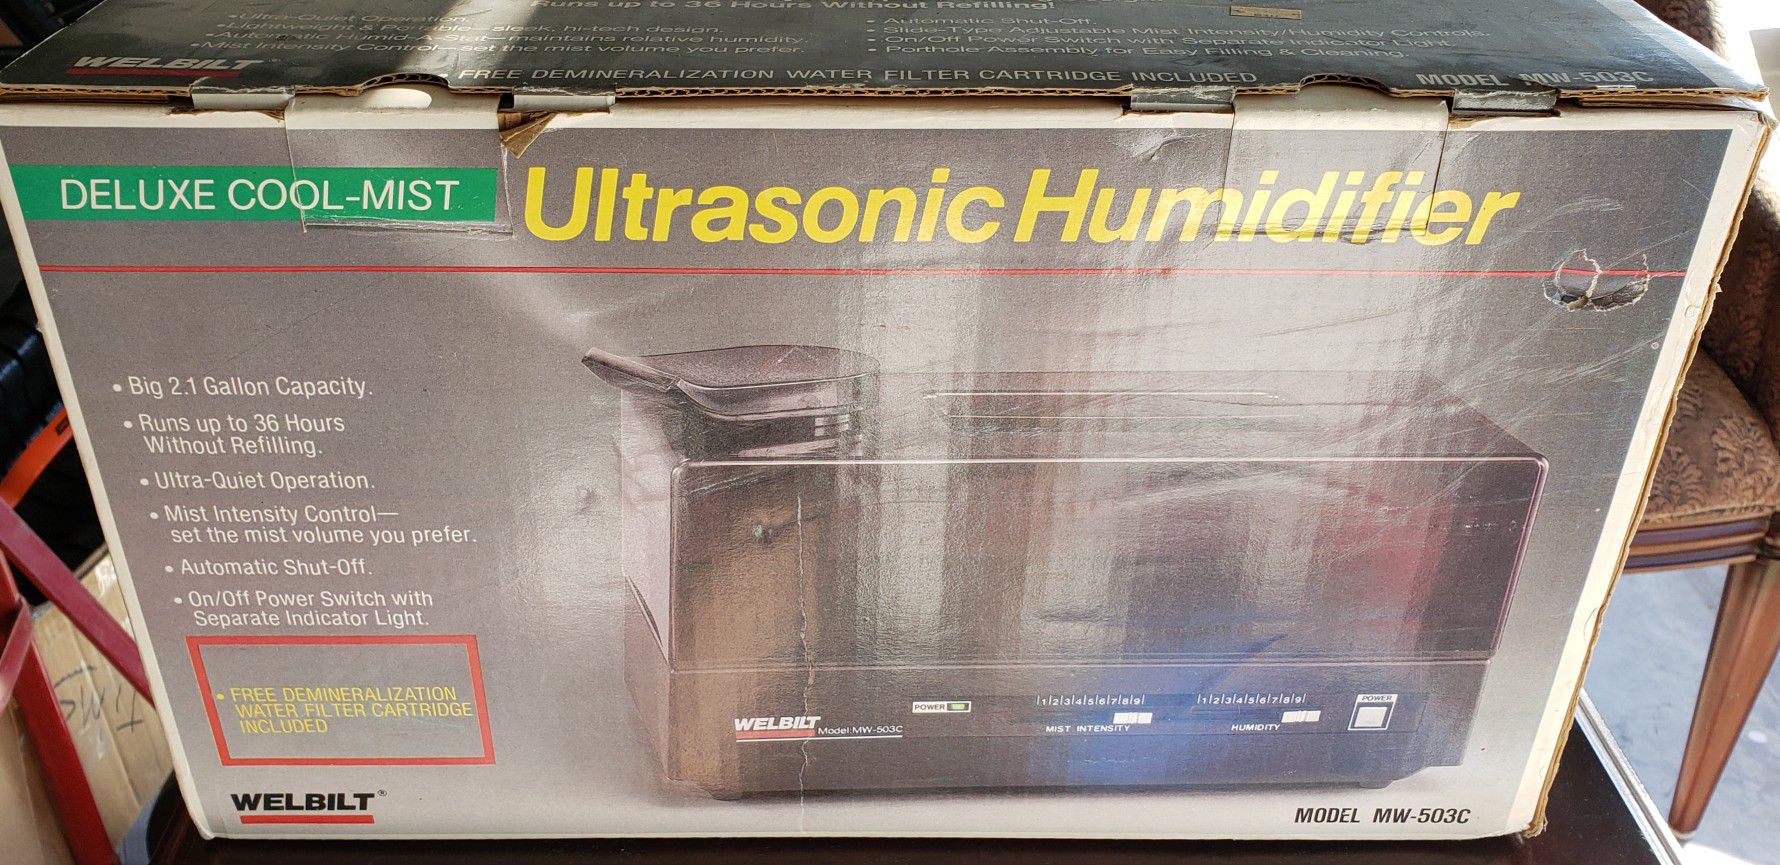 Ultrasonic Humidifier Welbilt